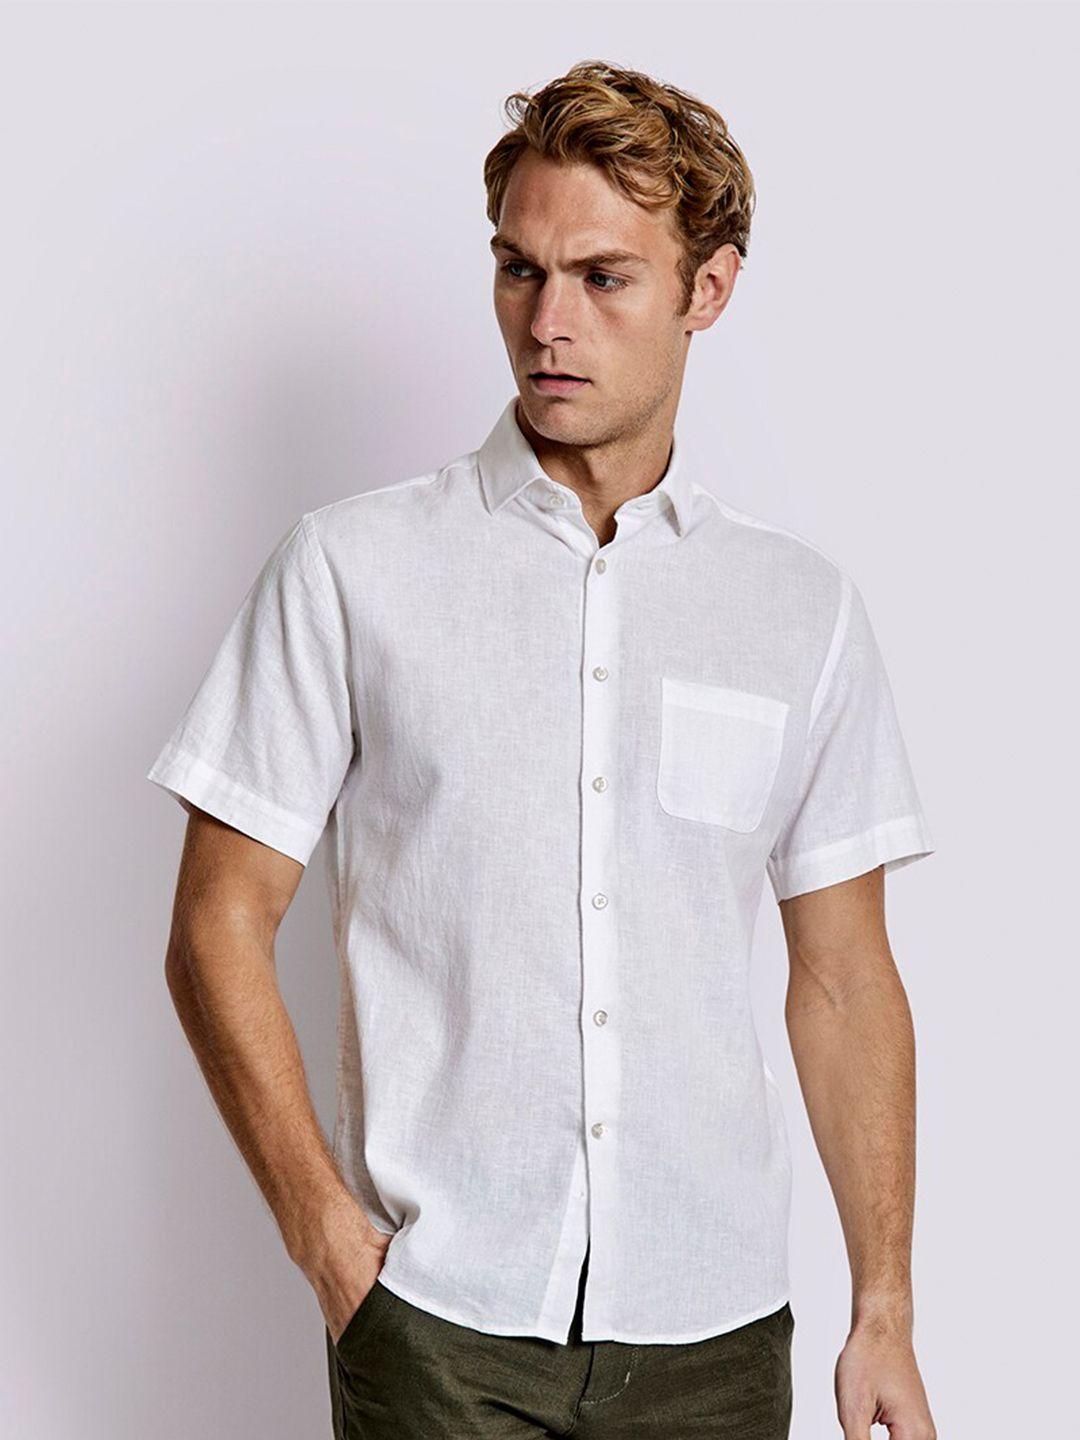 bruun & stengade men classic linen cotton casual shirt